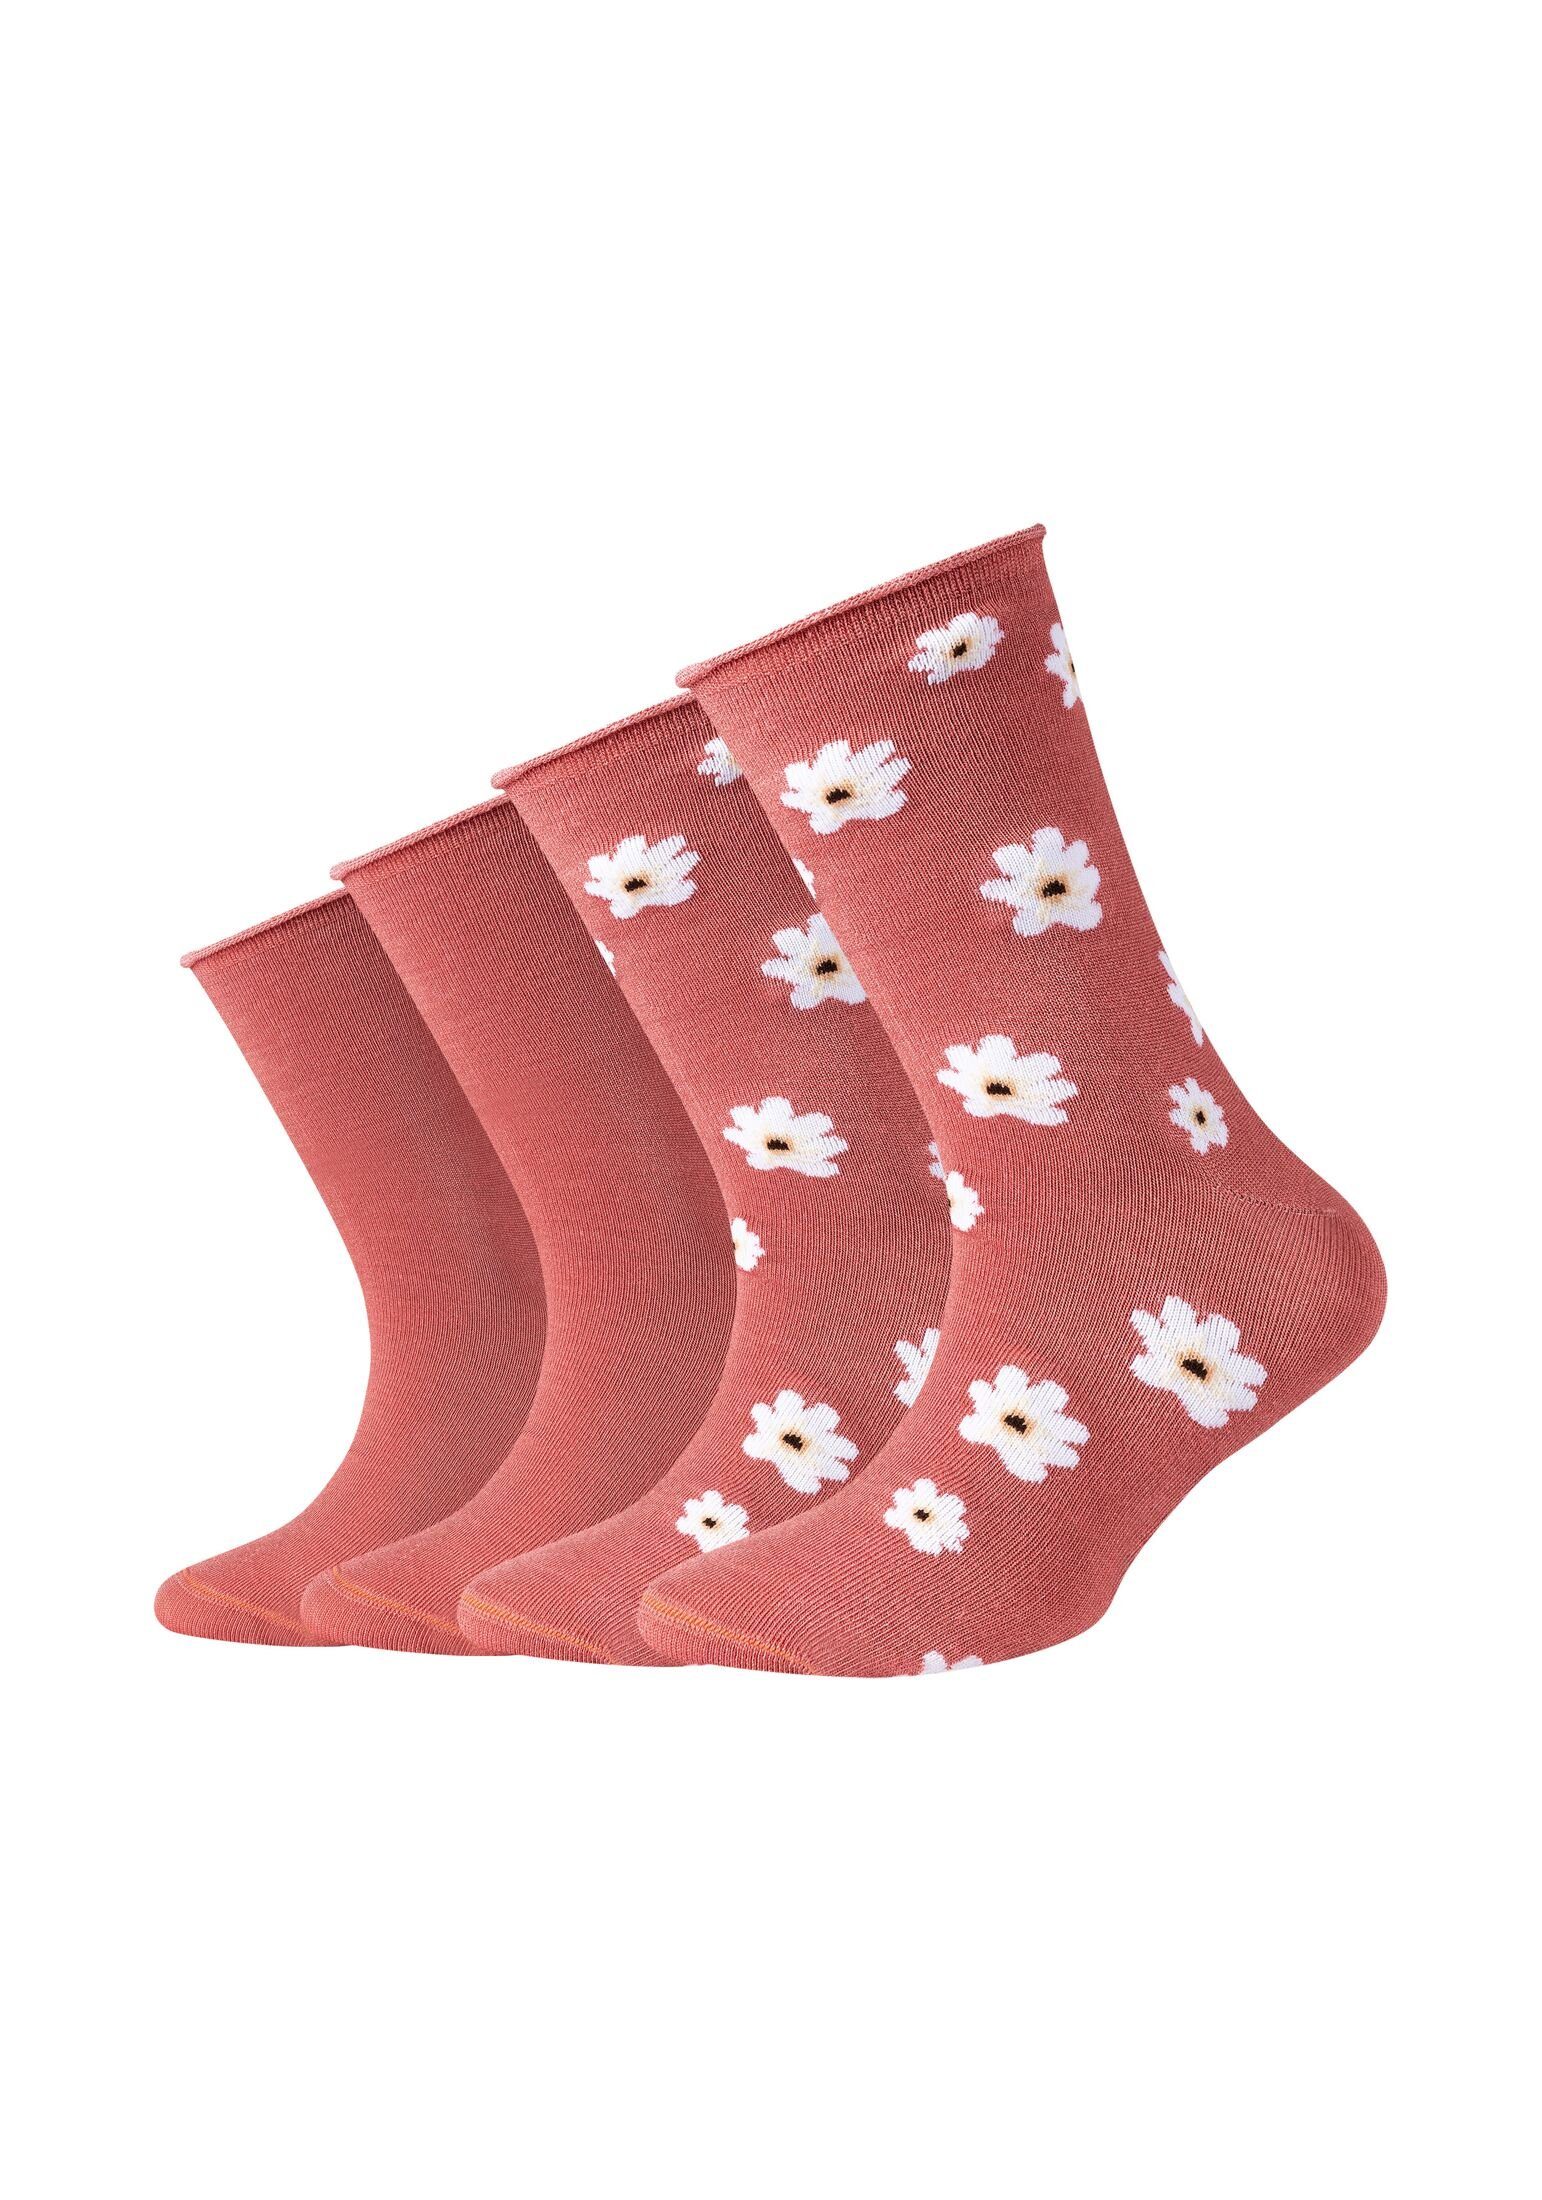 s.Oliver Socken Socken 4er Pack faded rose